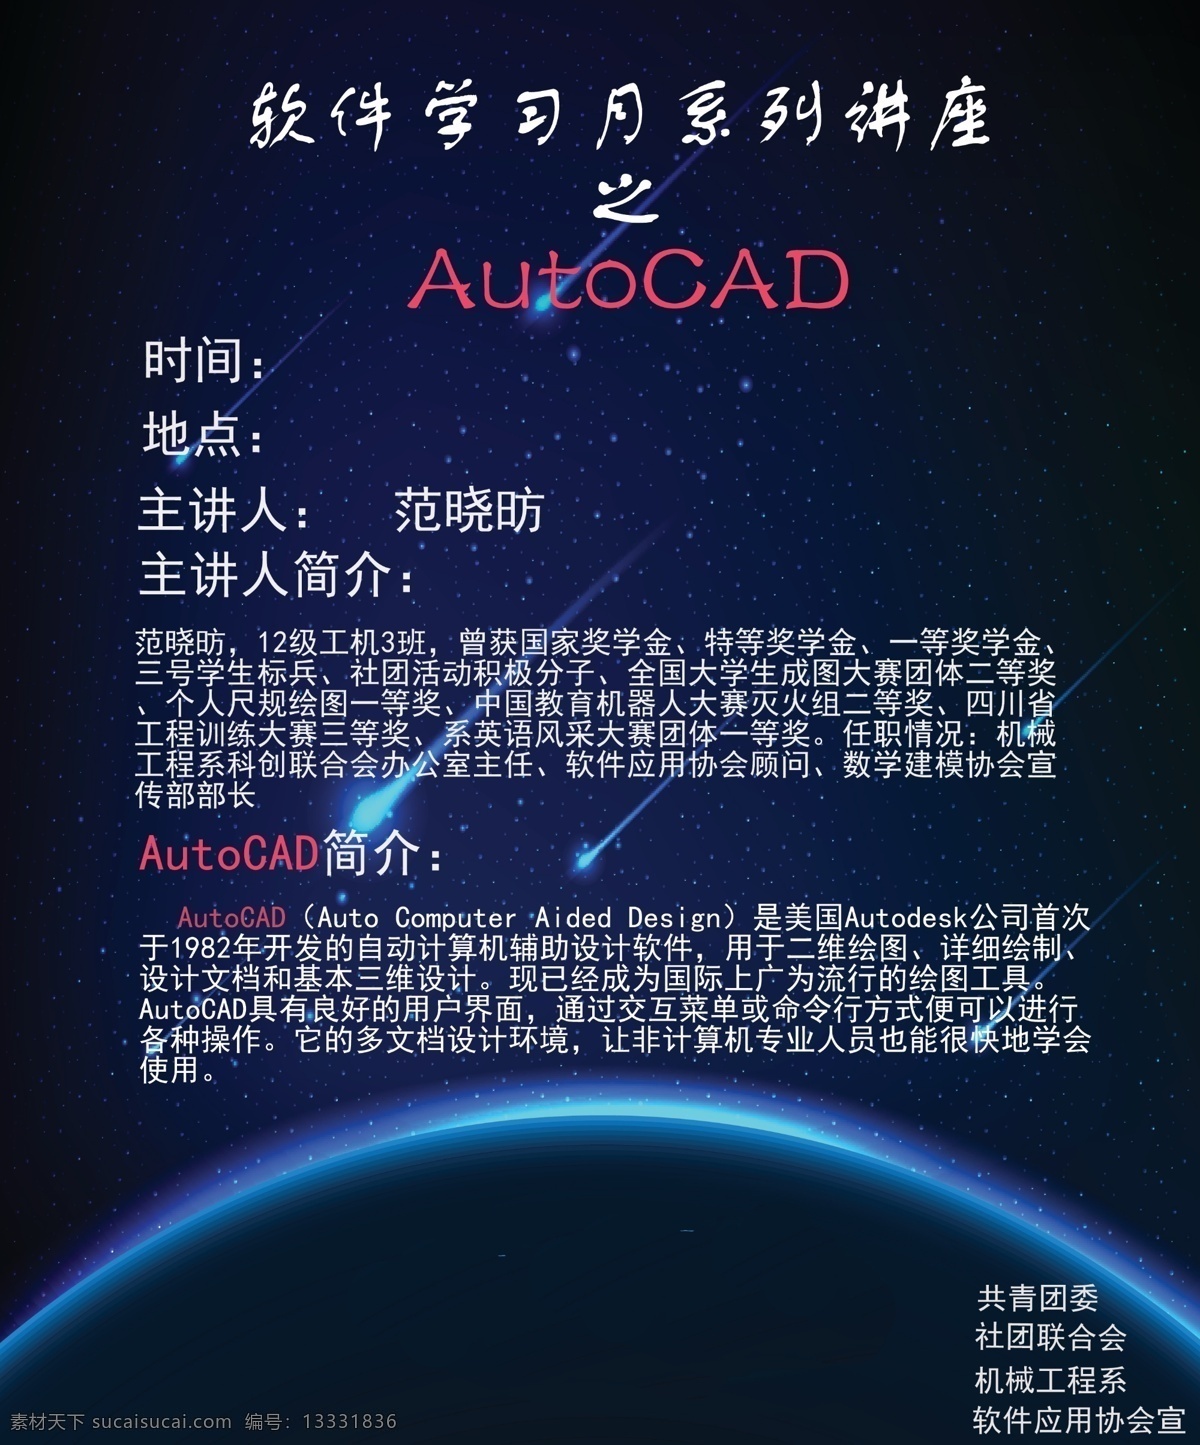 软件应用 协会 autocad 讲座 软件 学习 原创设计 原创海报